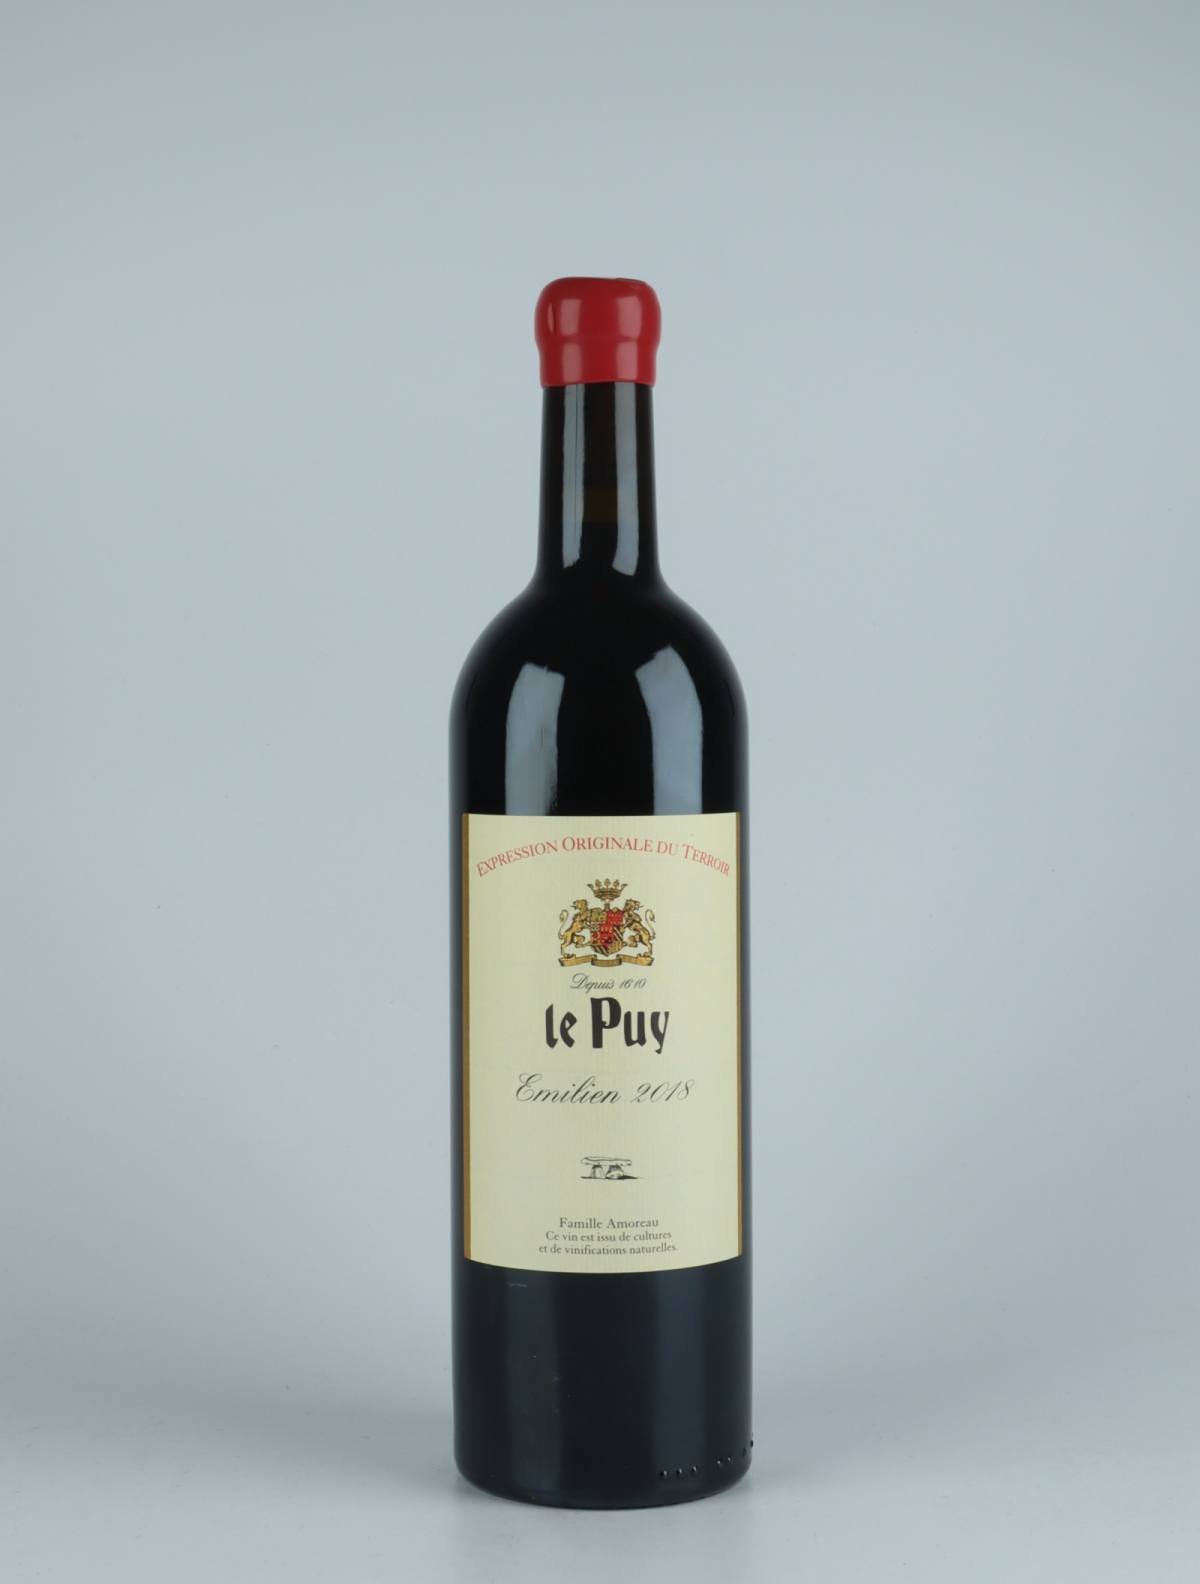 En flaske 2018 Emilien Rødvin fra Château le Puy, Bordeaux i Frankrig